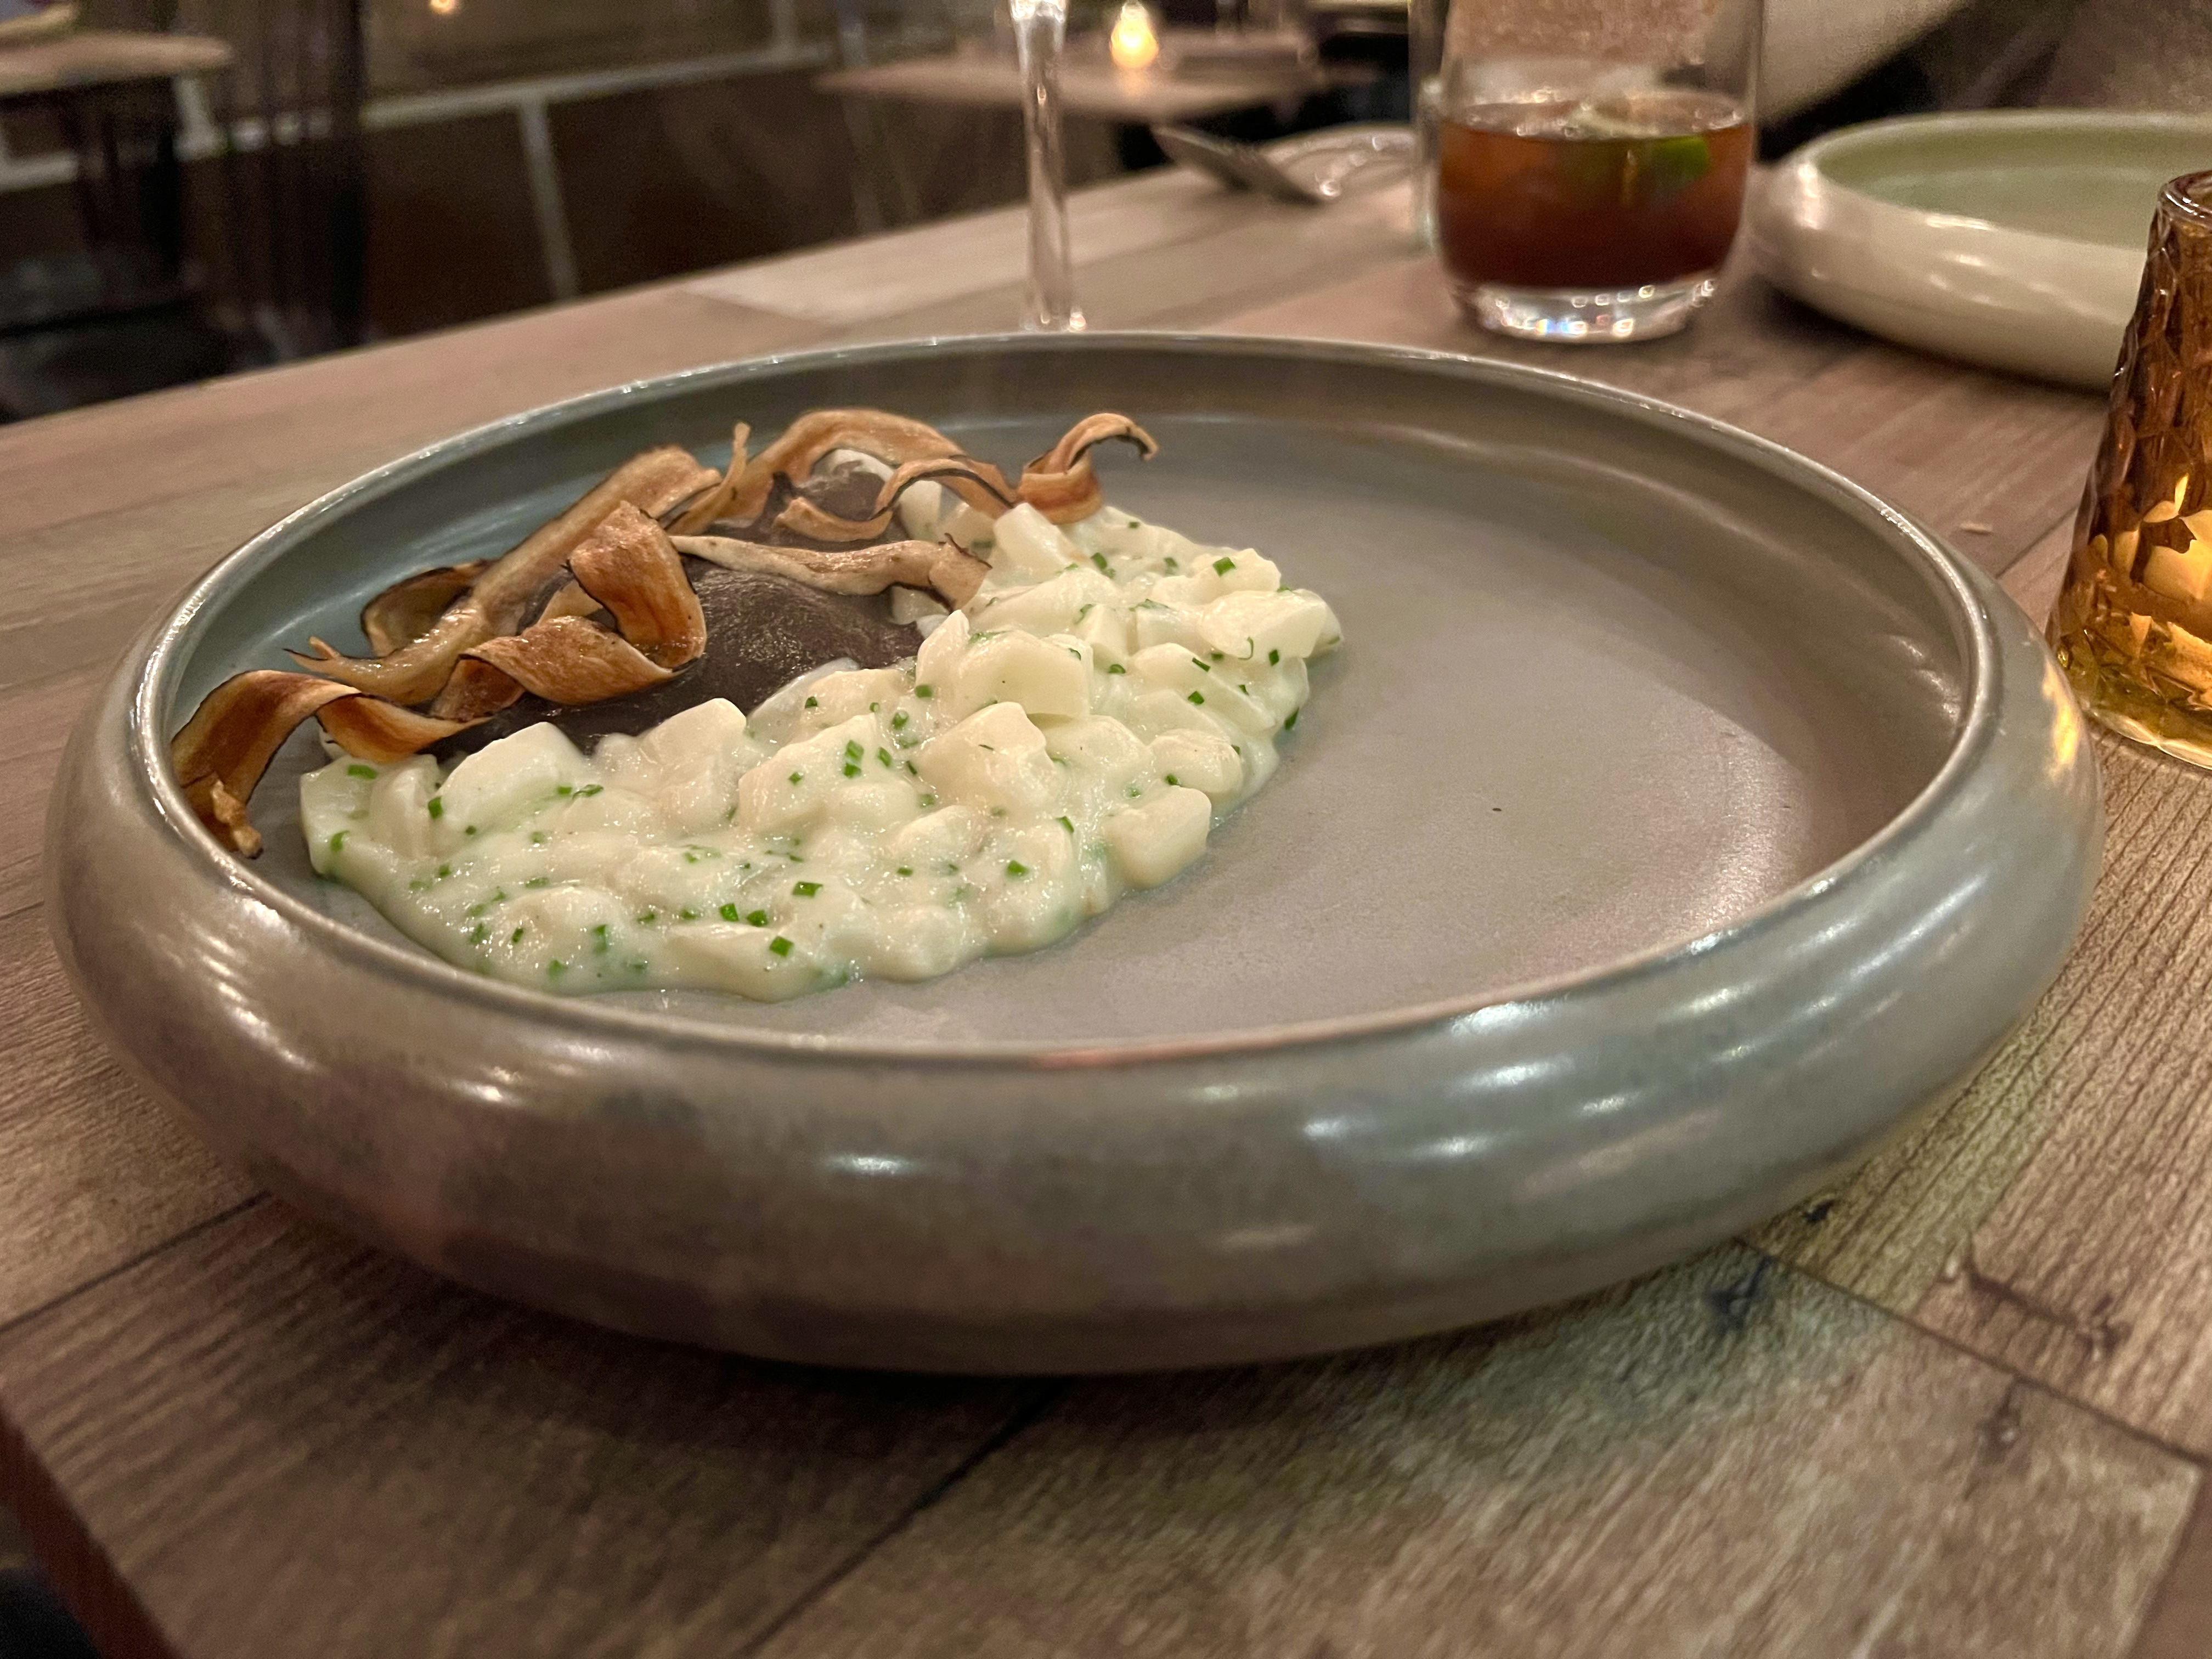 在灰色空碗的边缘，放着一堆调味意大利饭，旁边是灰色的喇叭菇泥